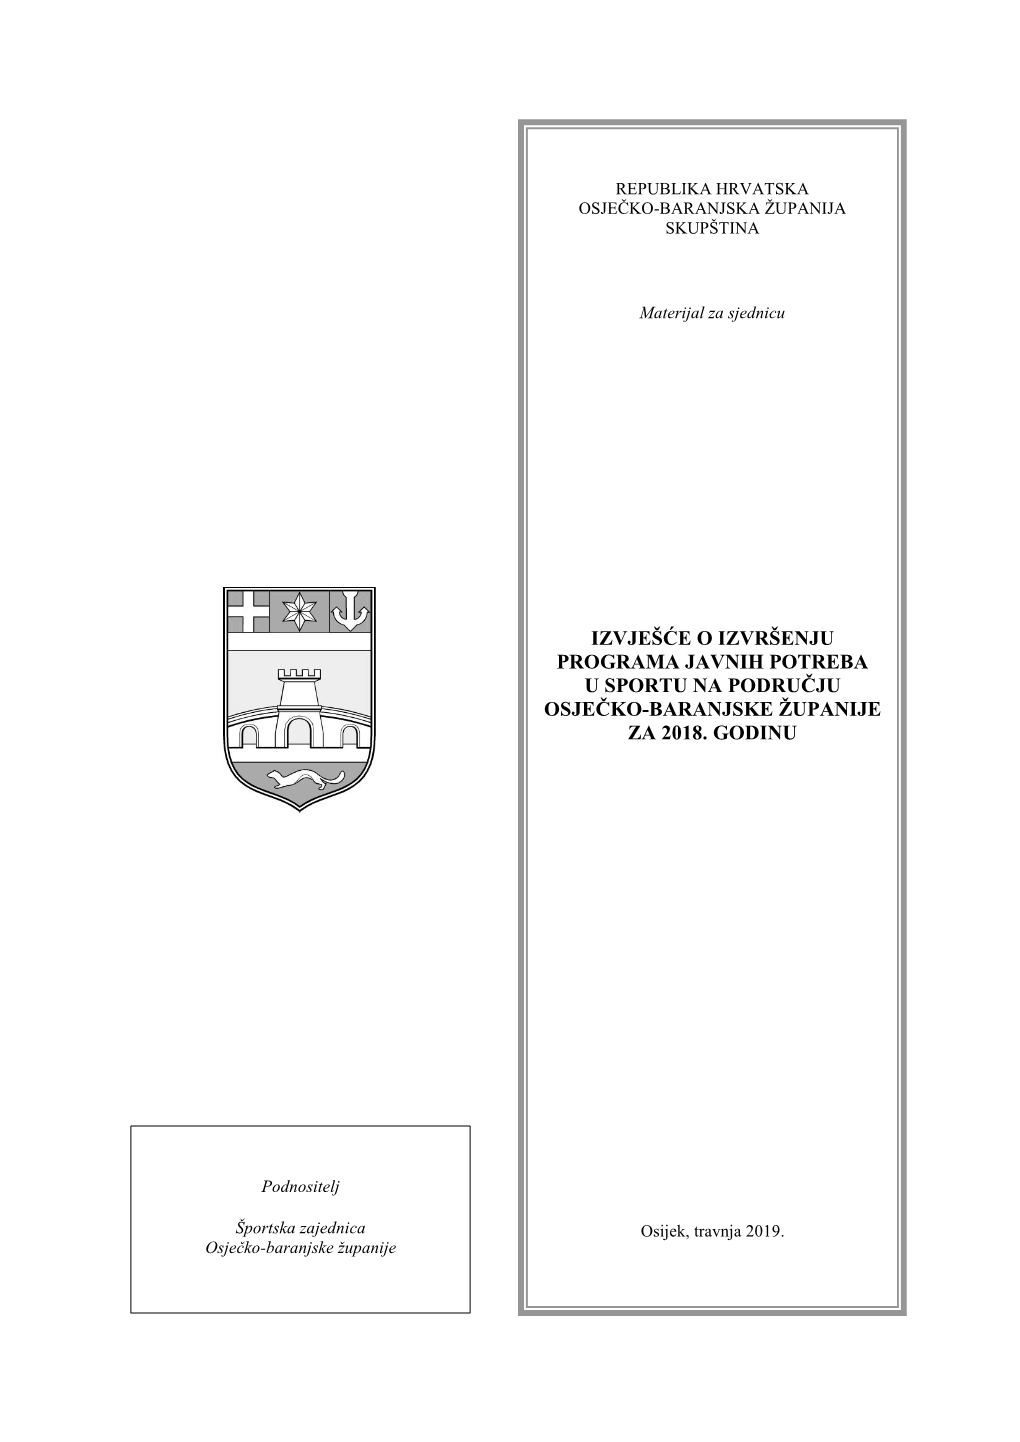 Izvješće O Izvršenju Programa Javnih Potreba U Sportu Na Području Osječko-Baranjske Županije Za 2018